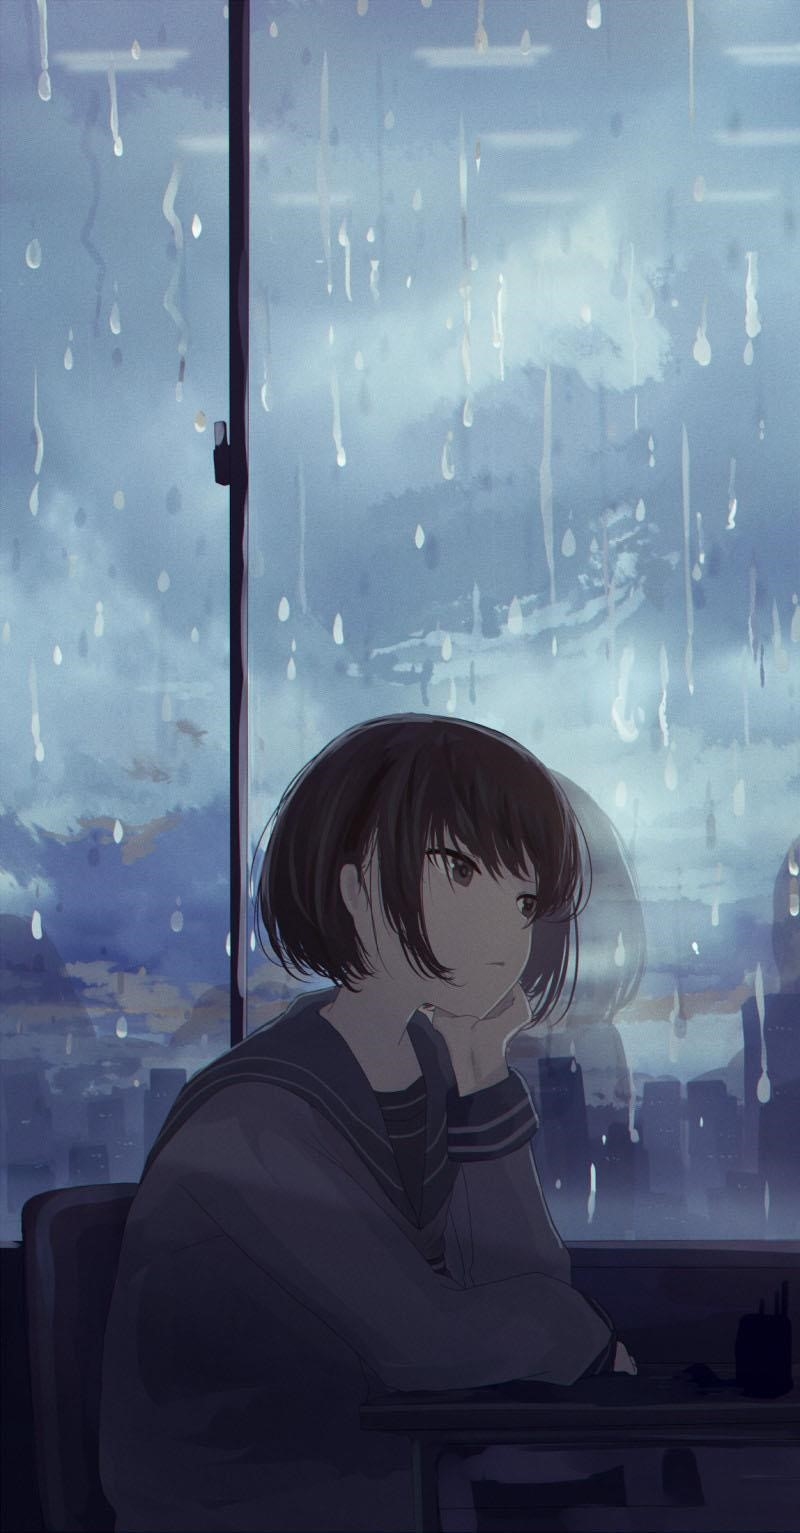 Hình ảnh manga cô đơn gần cửa sổ